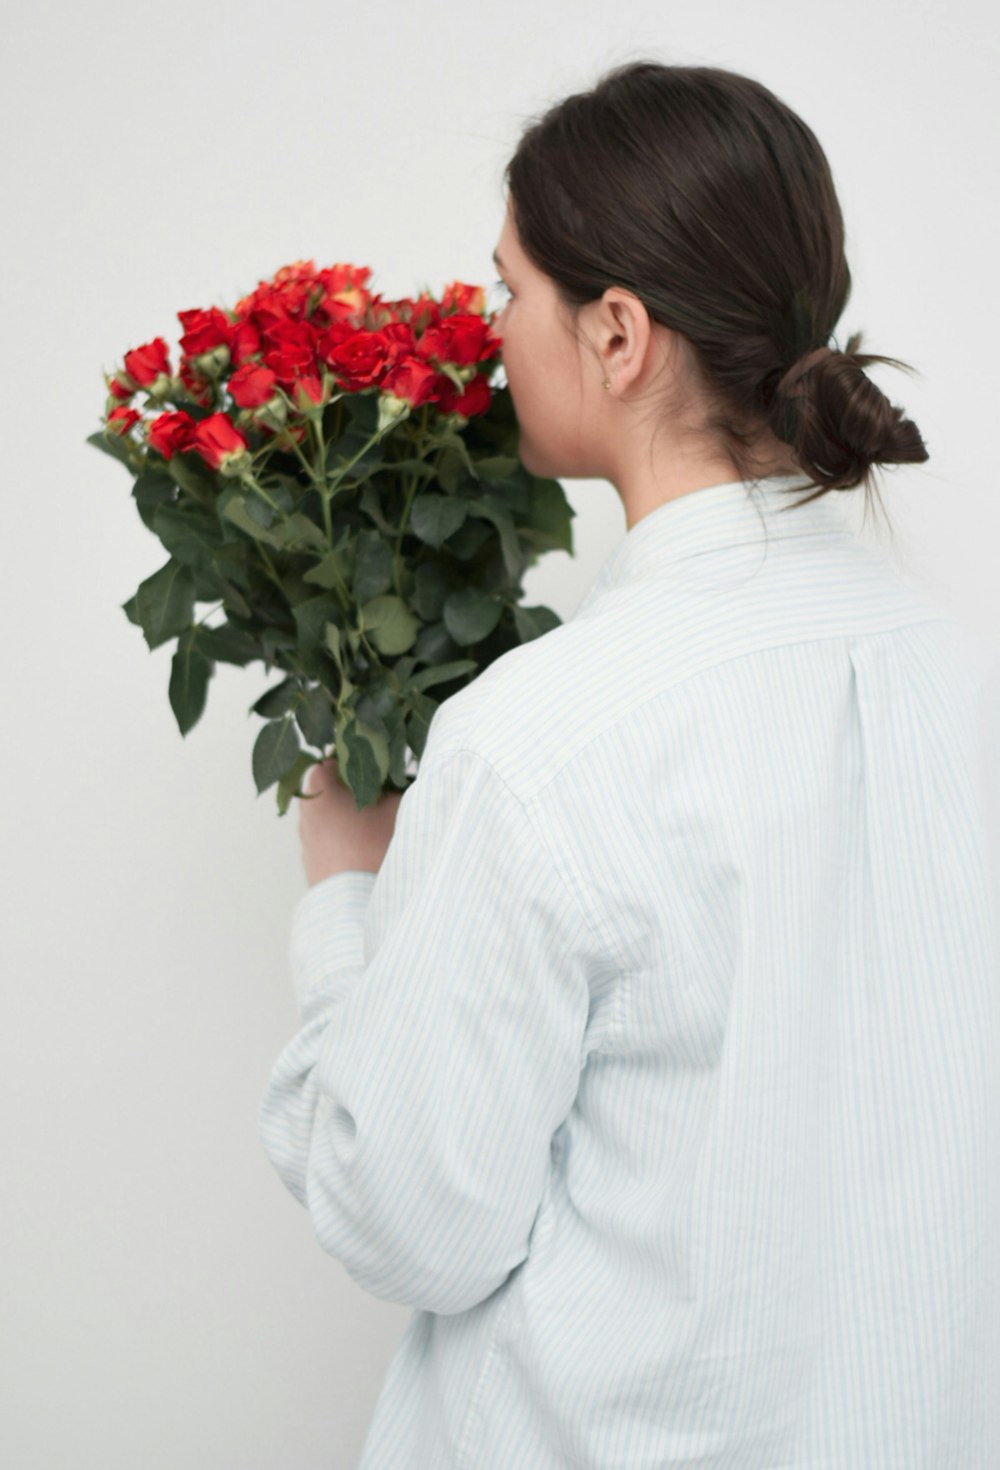 Foto Mujer con camisa blanca de manga larga sosteniendo un ramo de rosas rojas – Imagen Humano gratis en